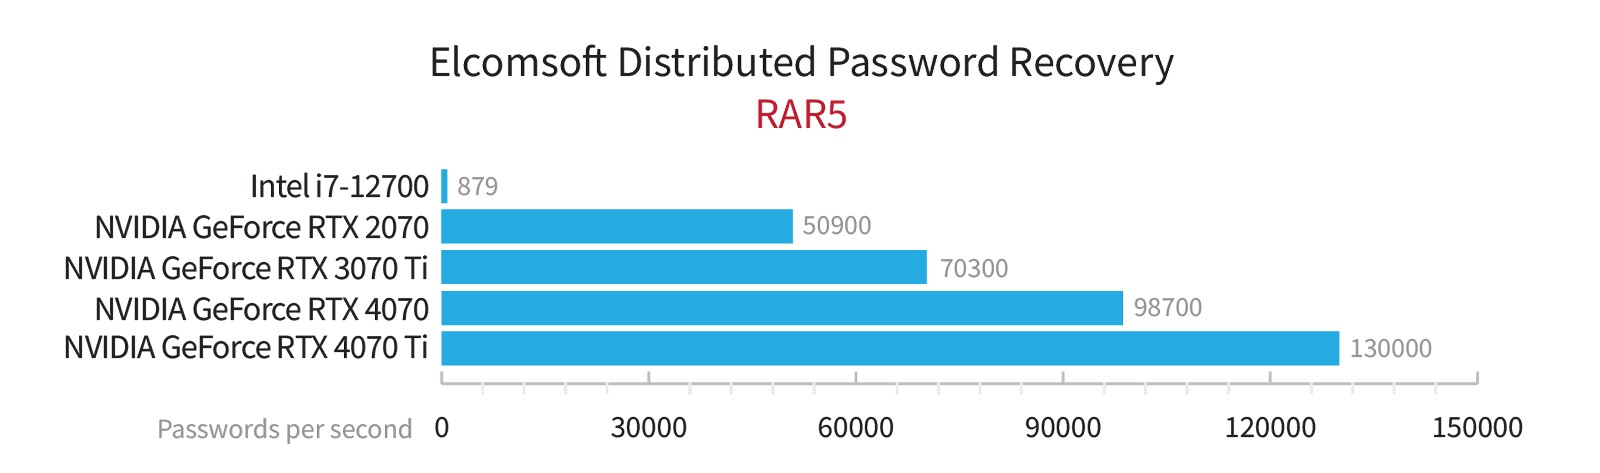 Resultados de rendimiento RAR5 de las series RTX 4000 y 3000.